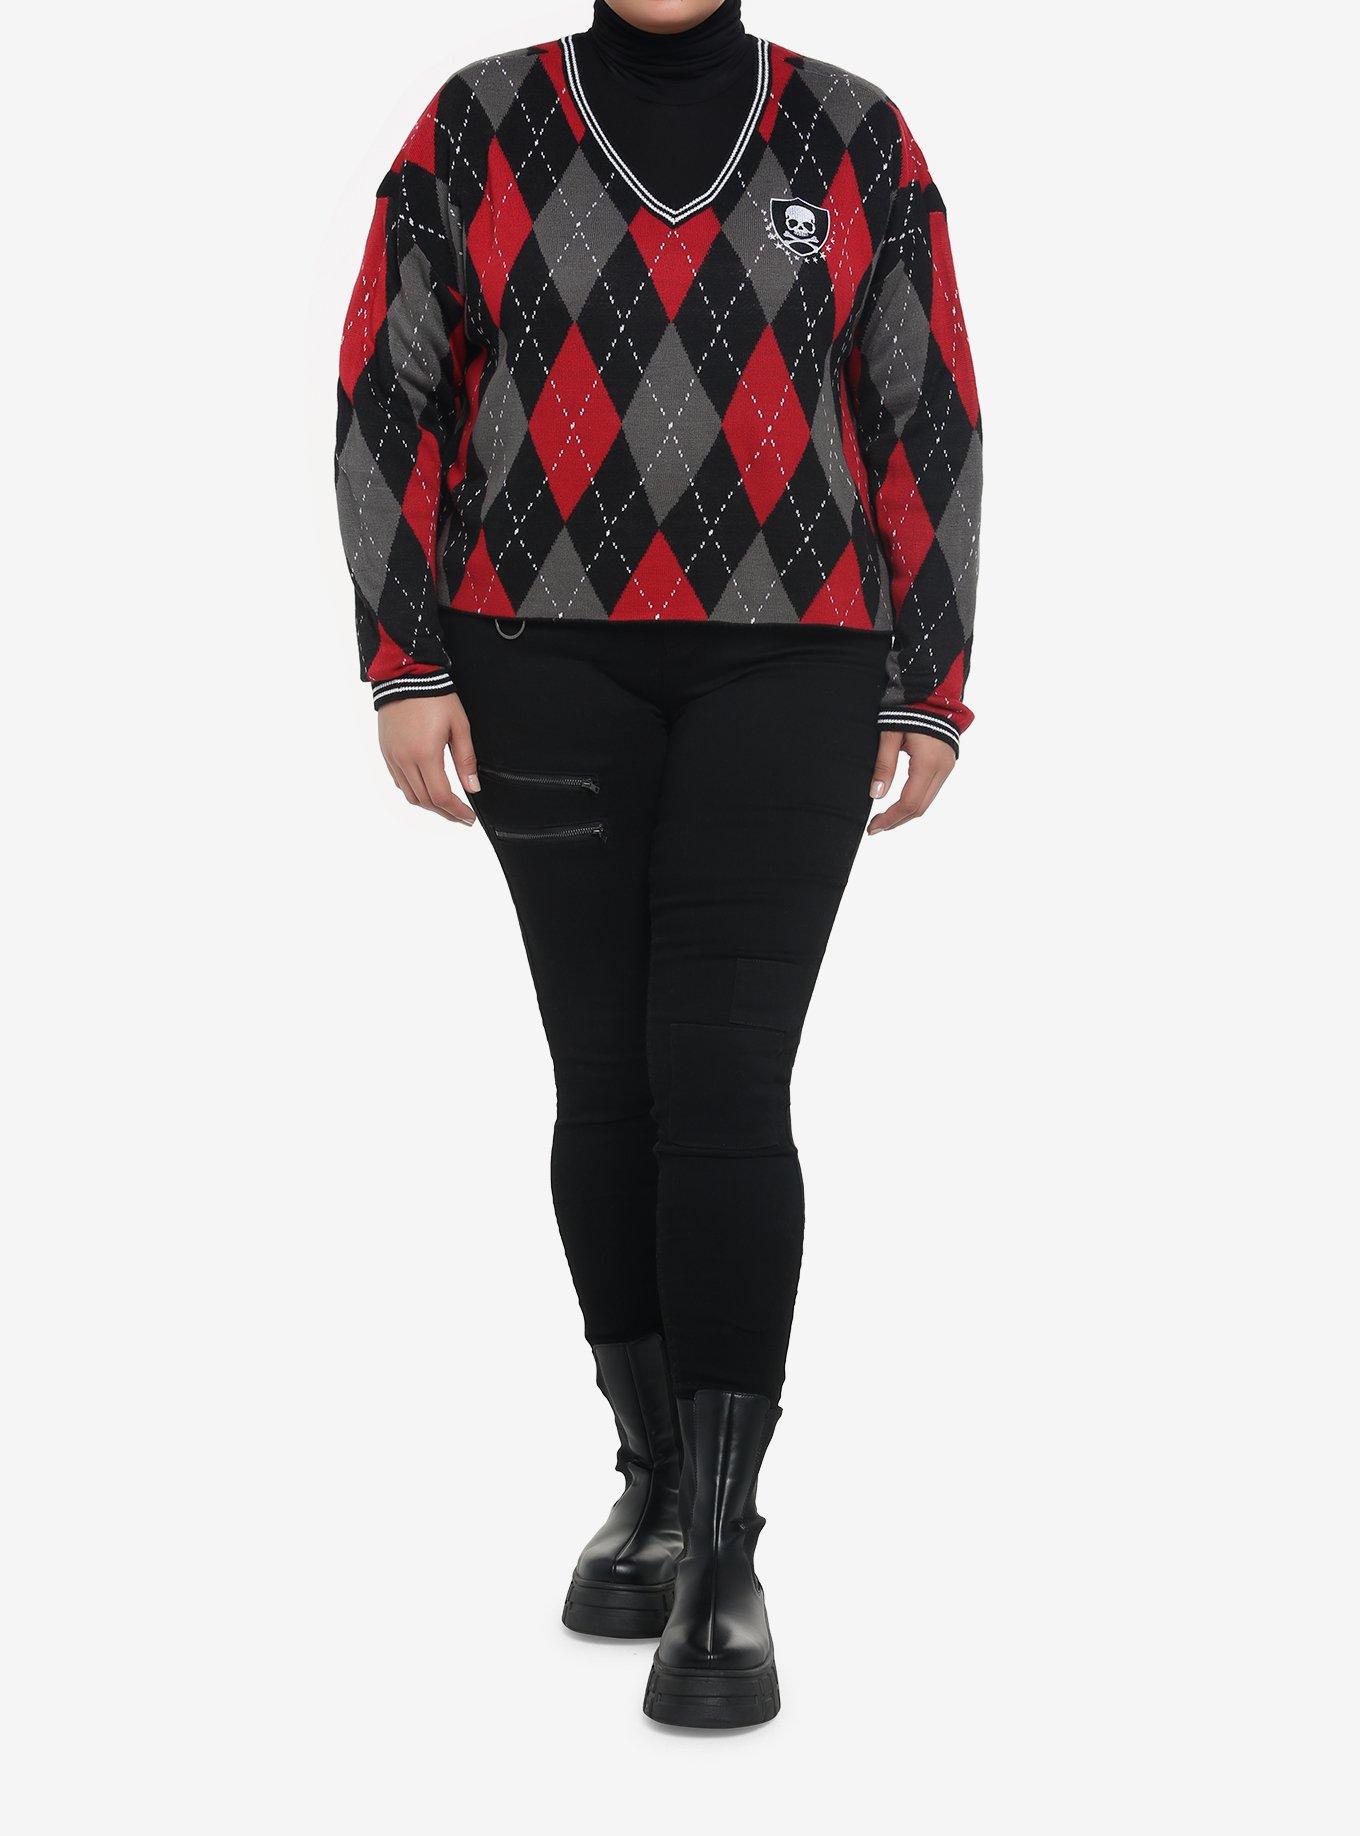 Skull Crest Argyle V-Neck Girls Sweater Plus Size, MULTI, alternate